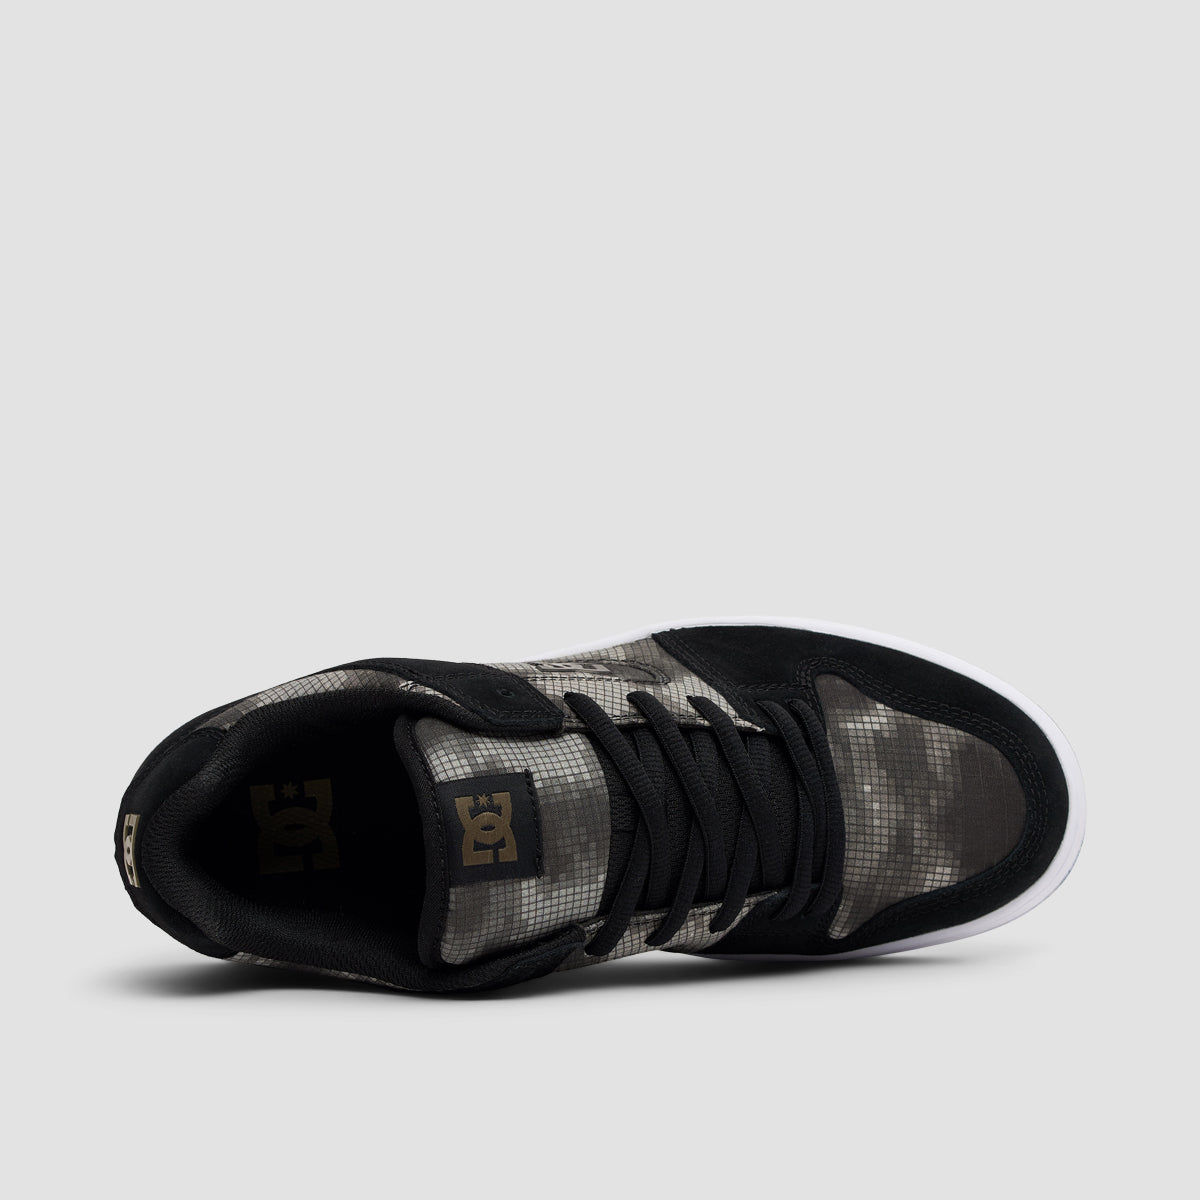 DC Manteca 4 Shoes - Black/Camo Print